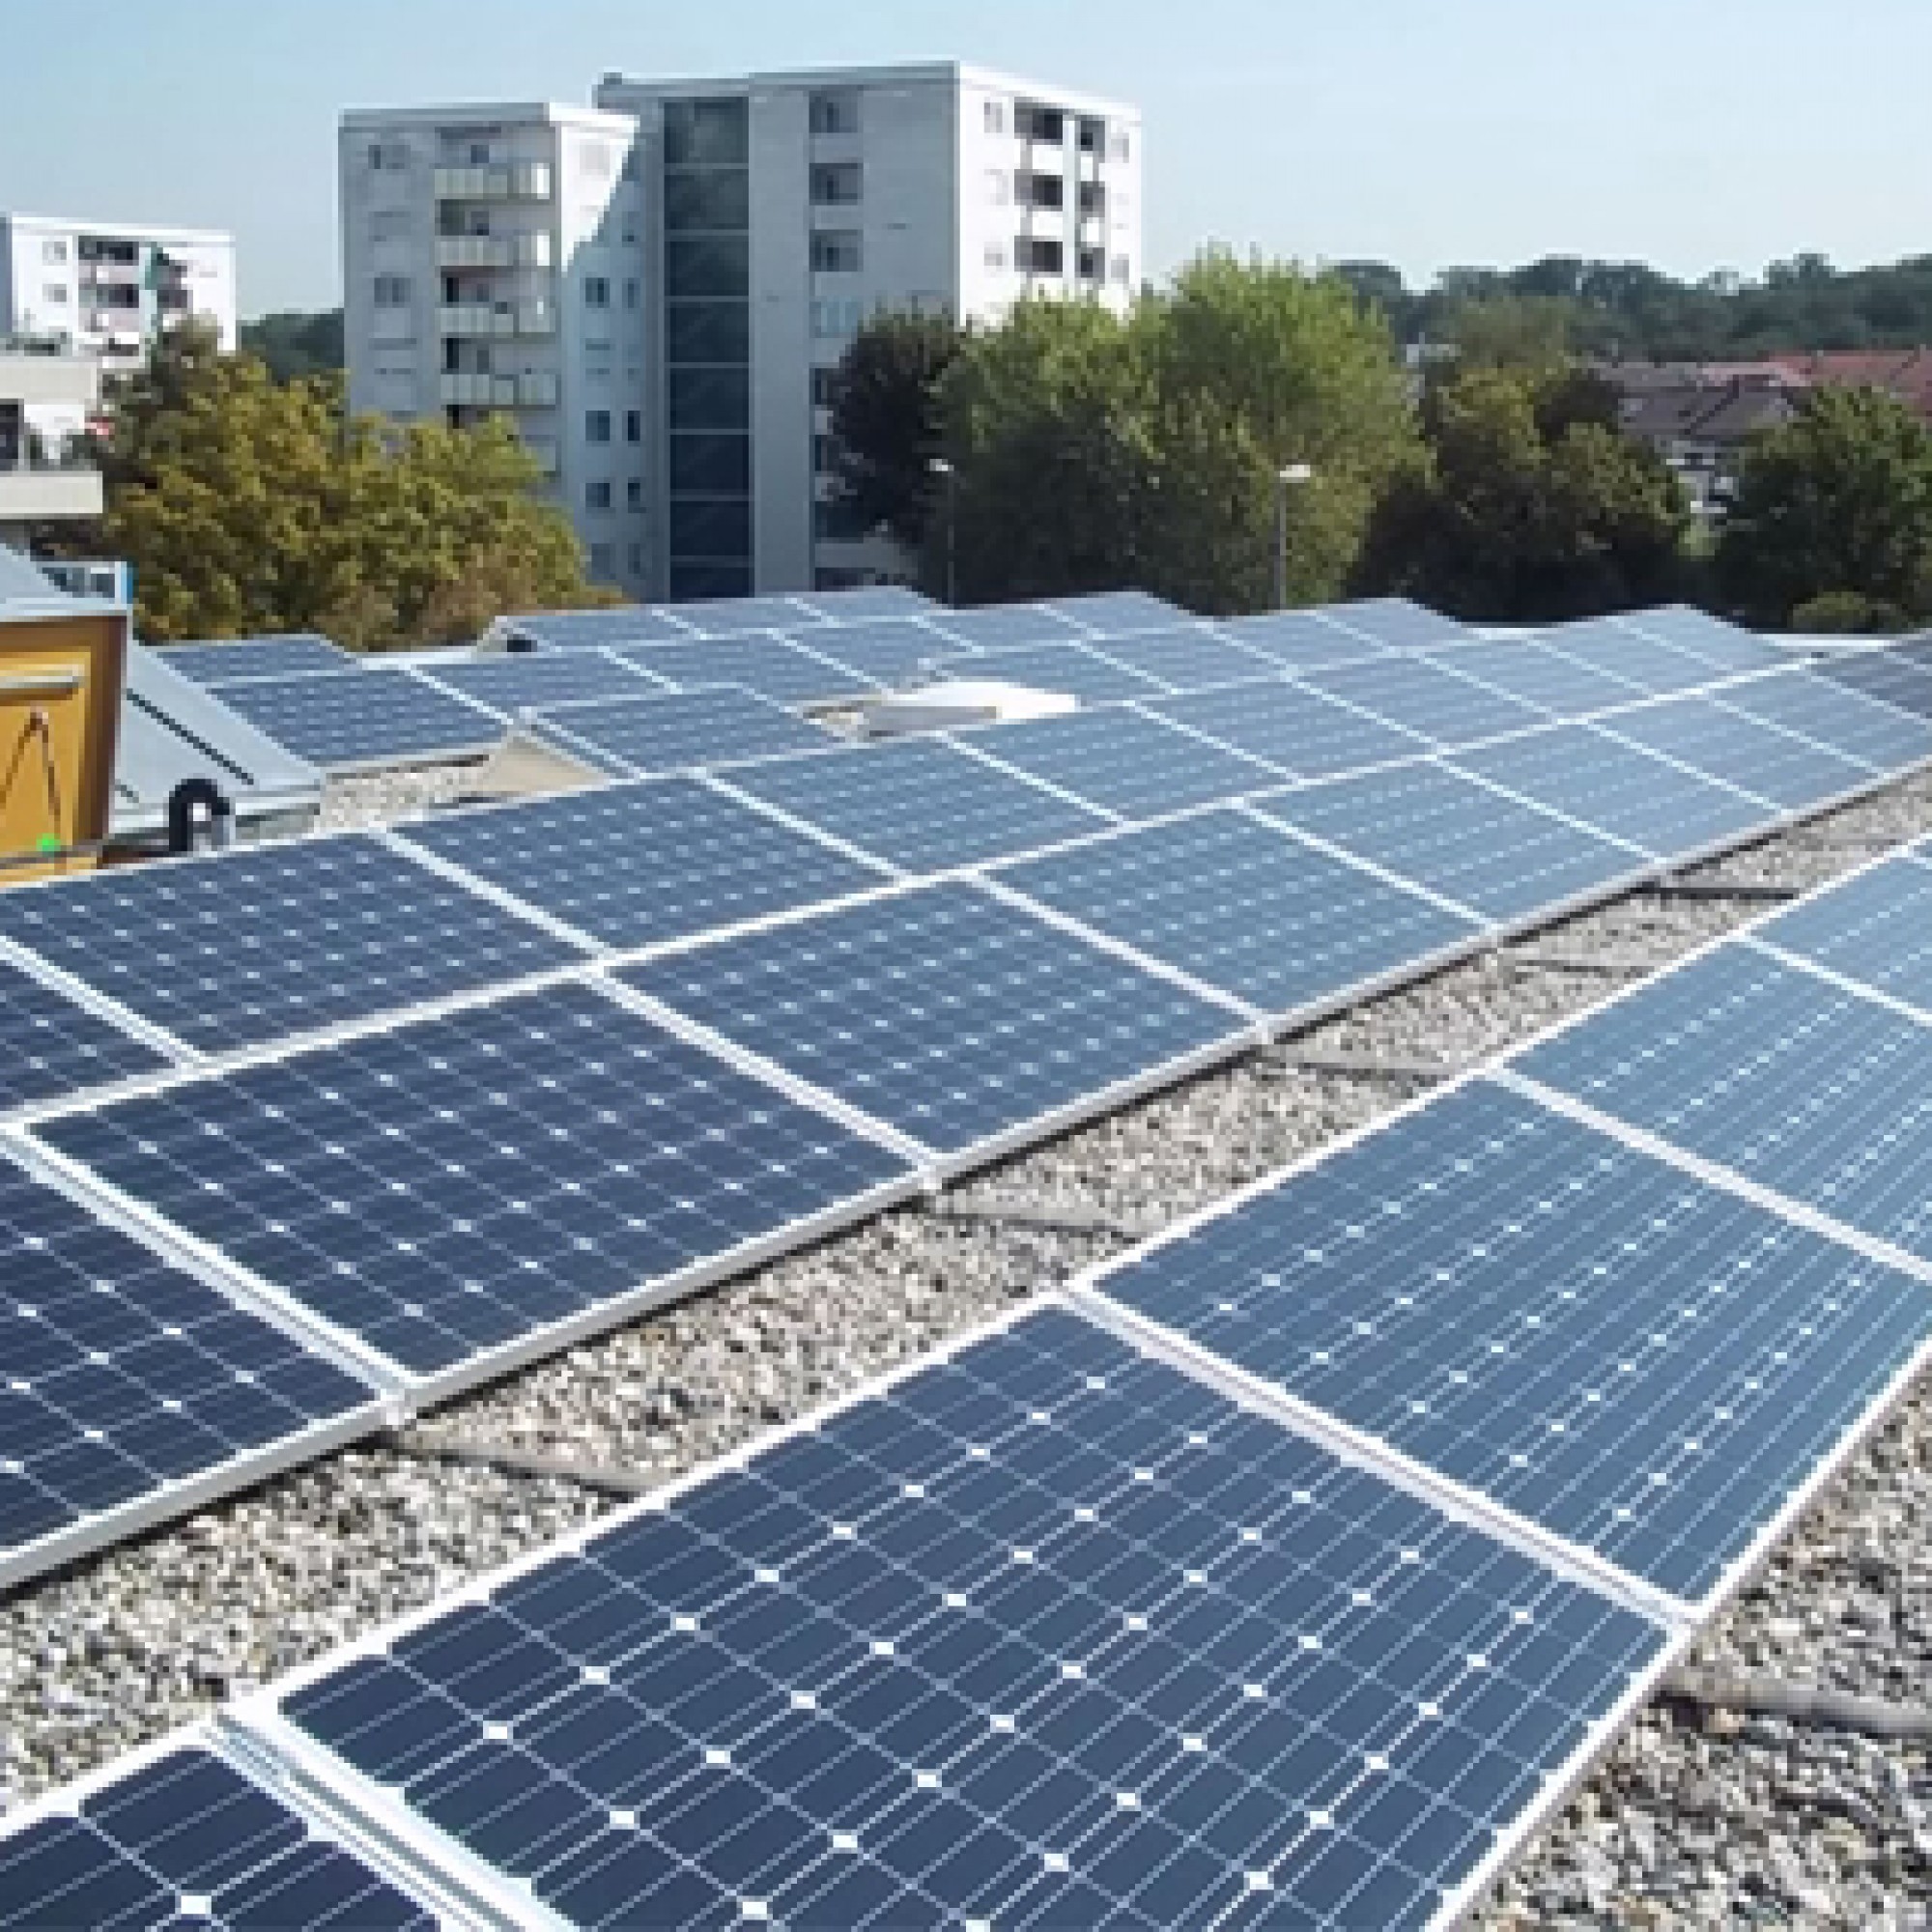 Solaranlagen sollen künftig auf kantonalzürcherischen Bauten Standard werden.